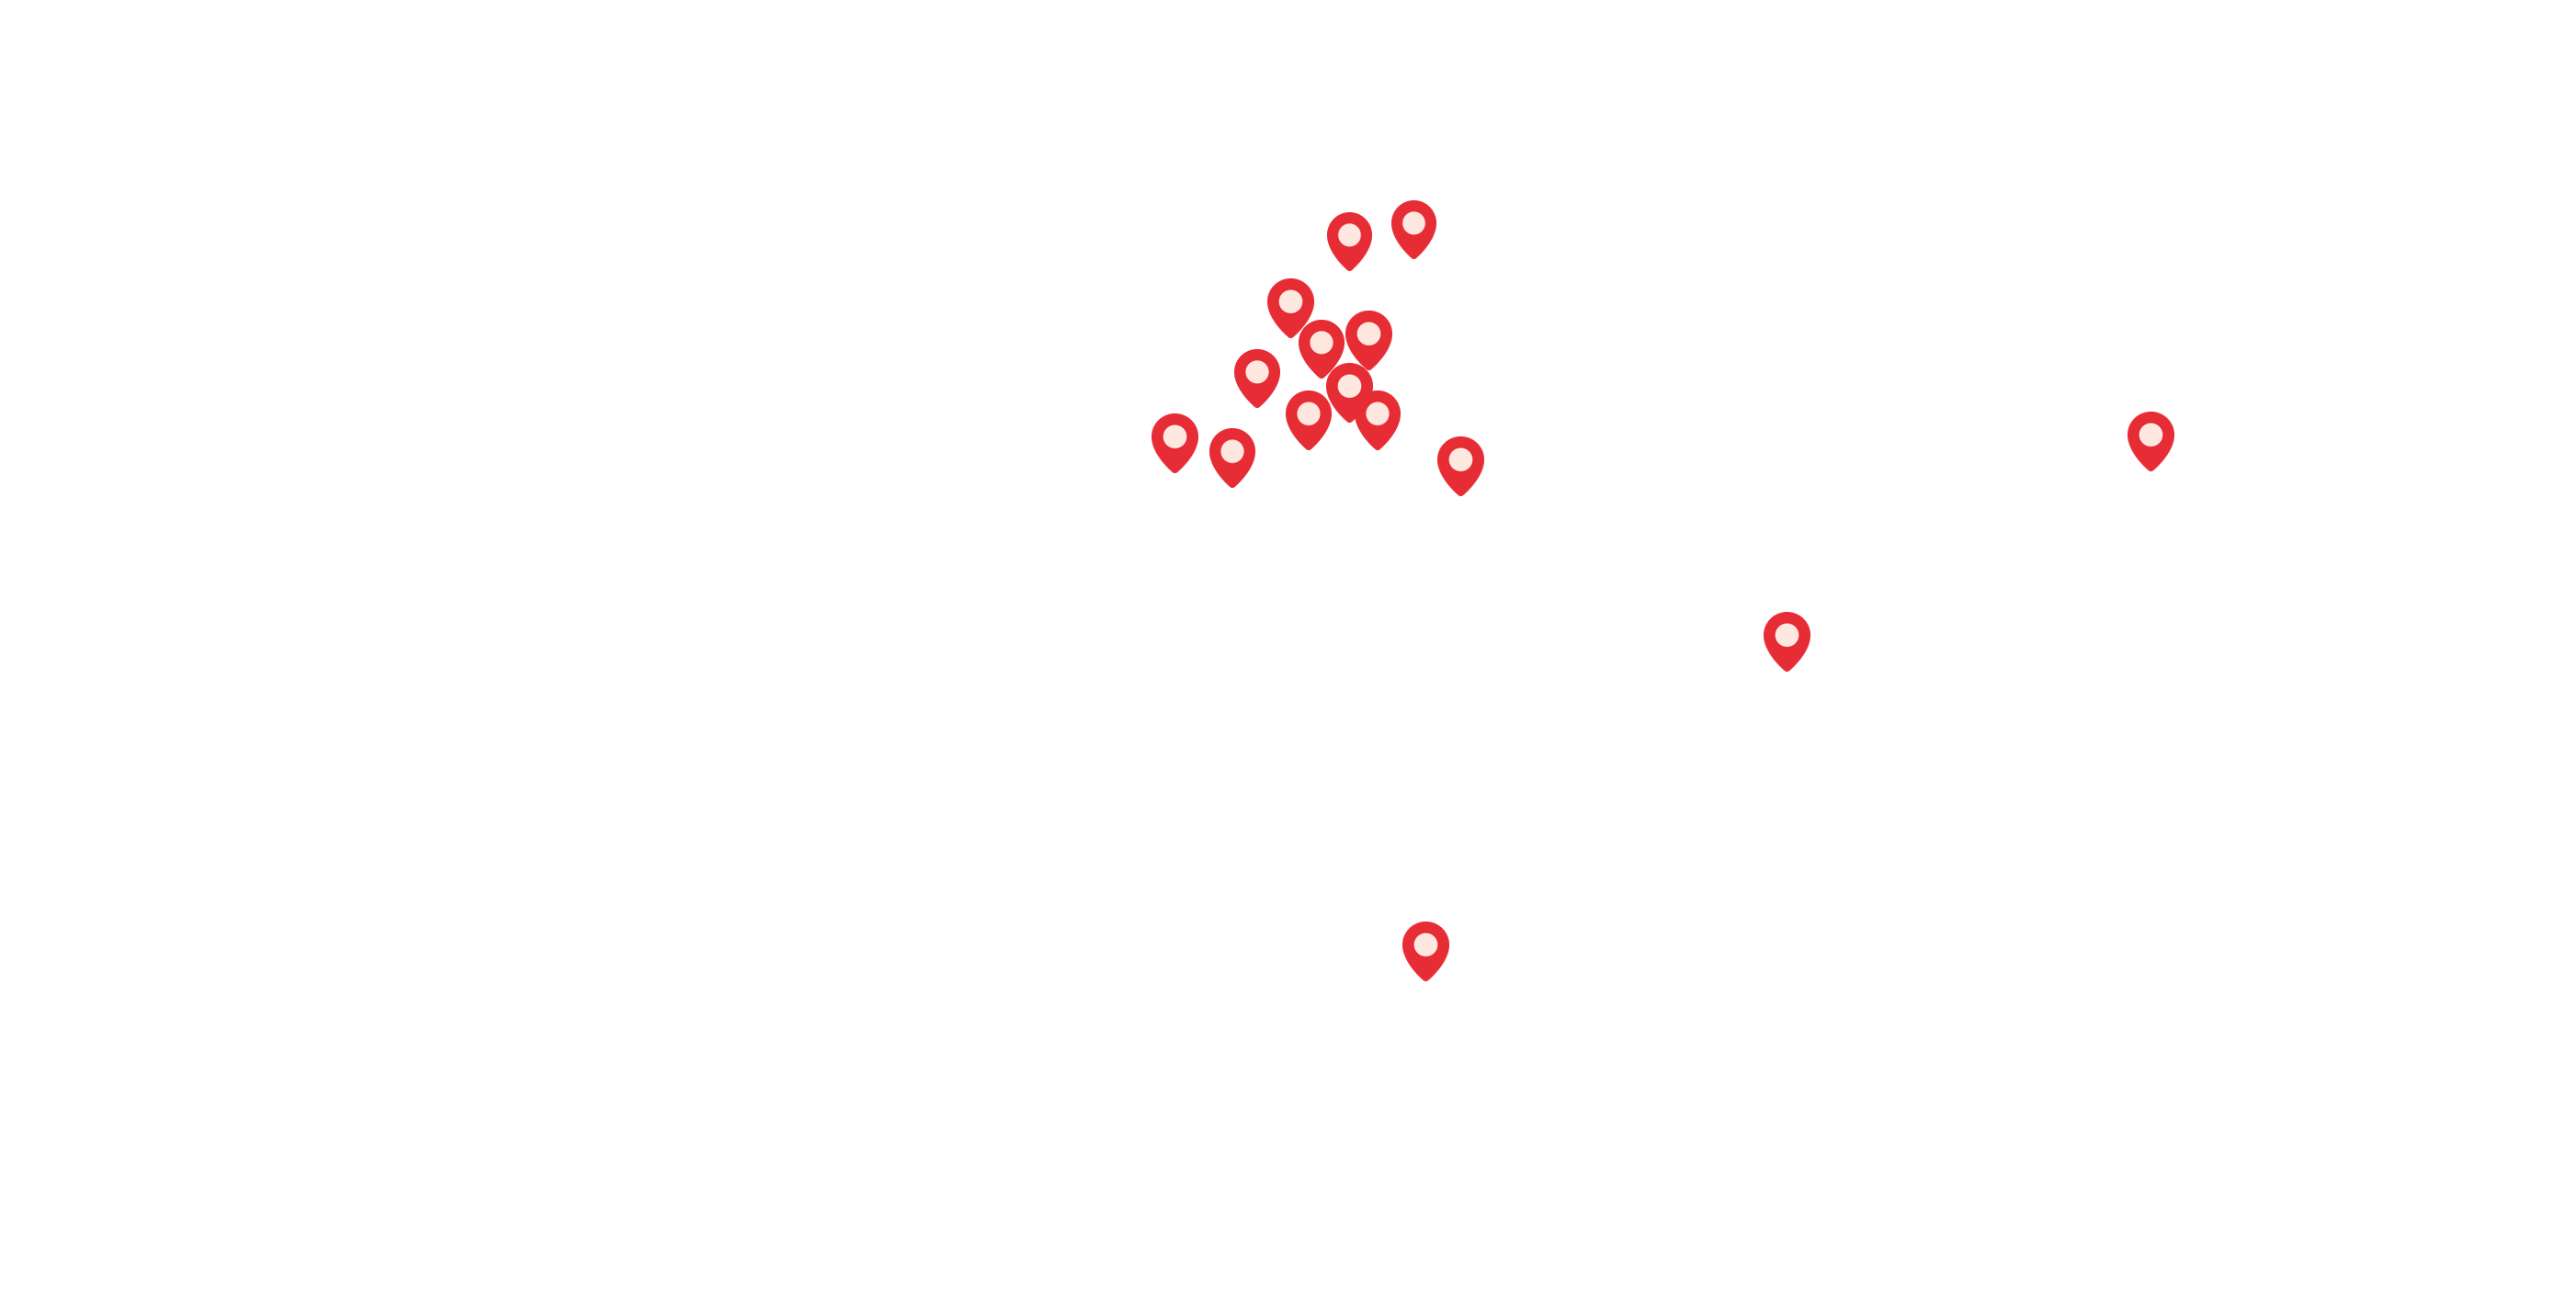 Weltkarte auf der mit Pins markiert ist, wo auf der ganzen Welt die conceito Gmbh Ihre Kunden hat